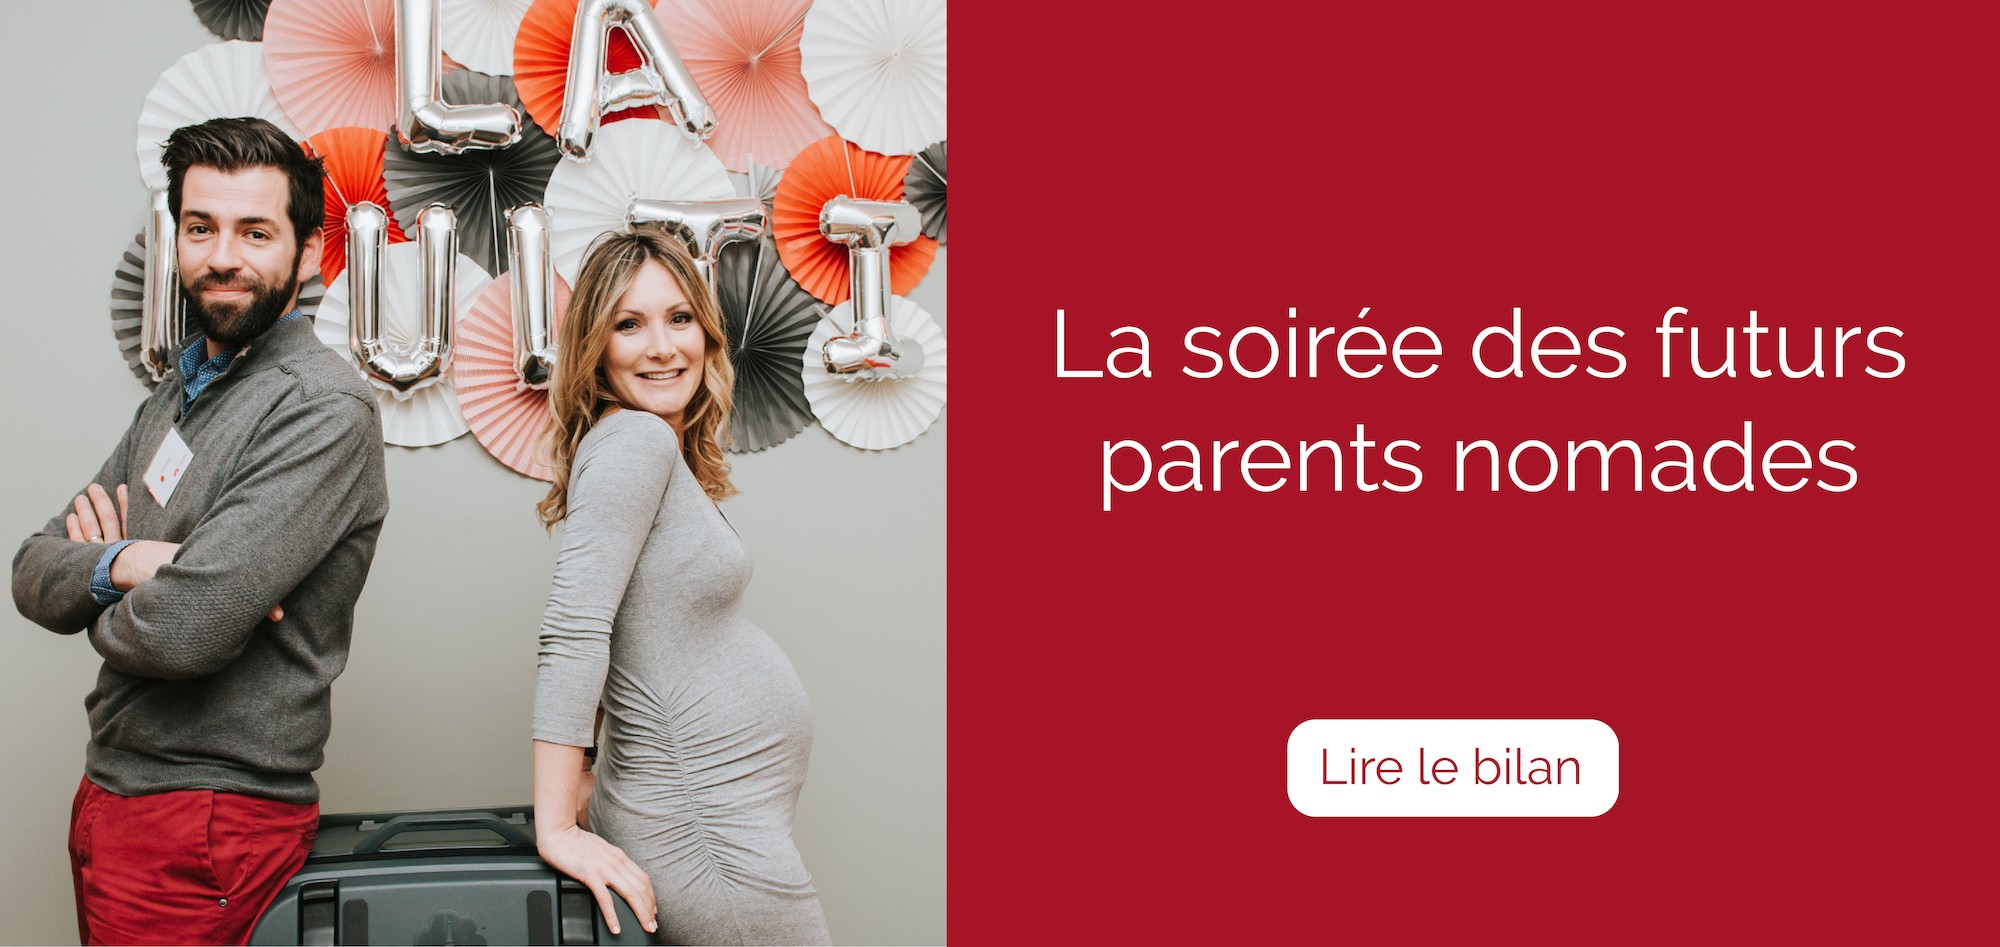 soiree-futurs-parents-nomades-paris